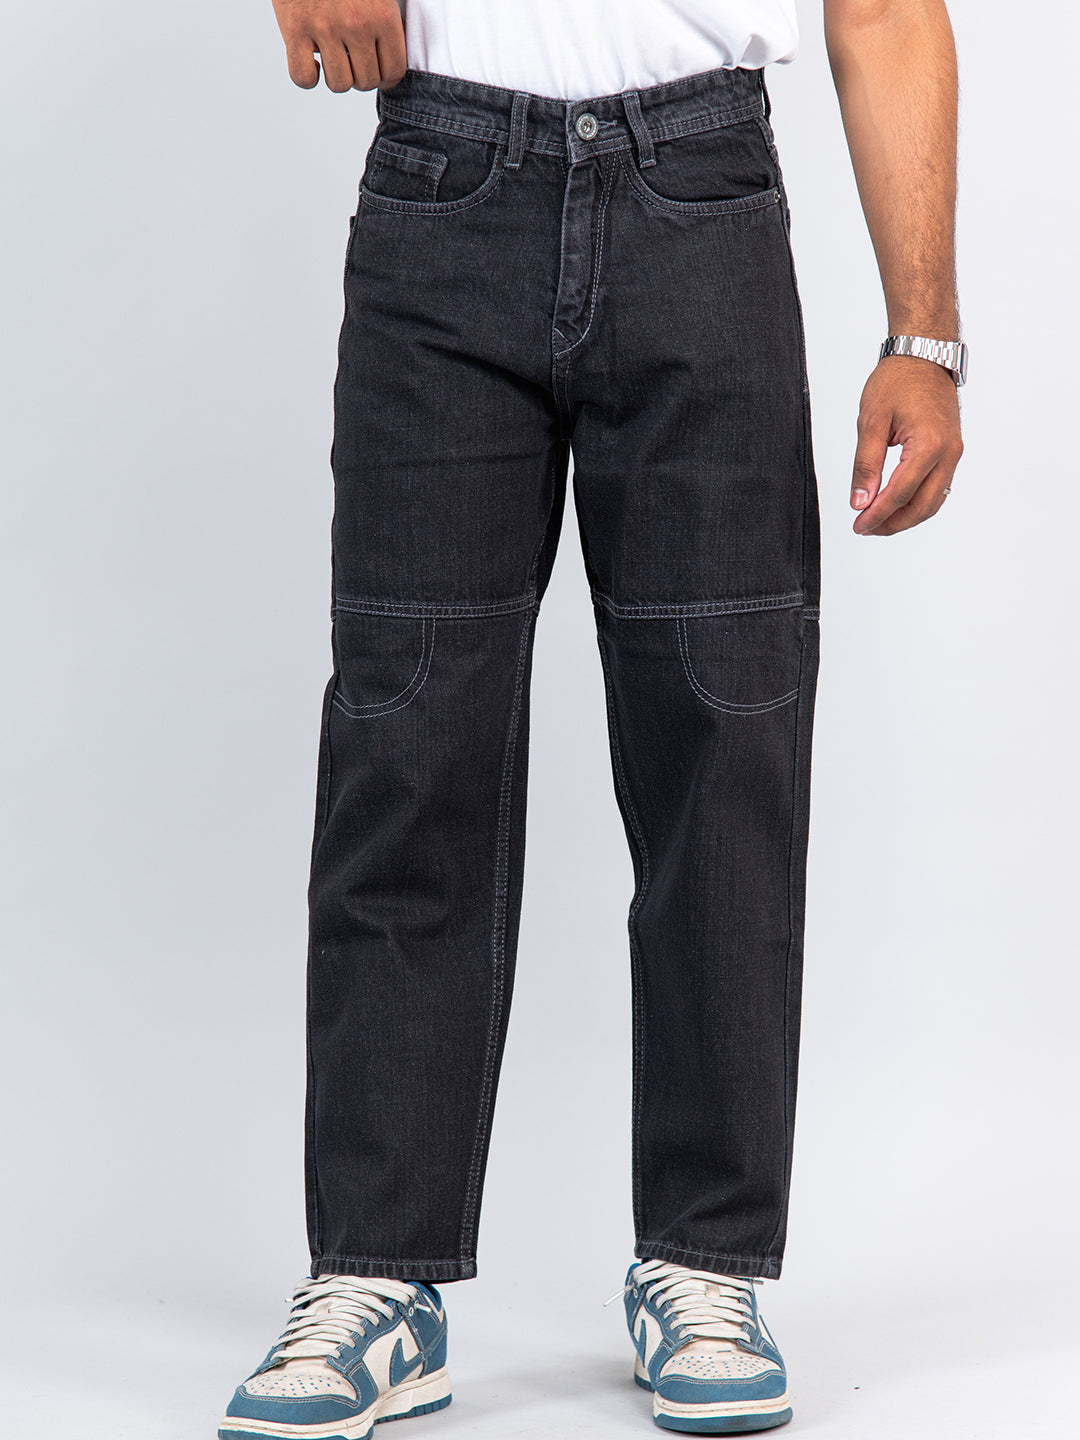 carbon black baggy fit denim jeans